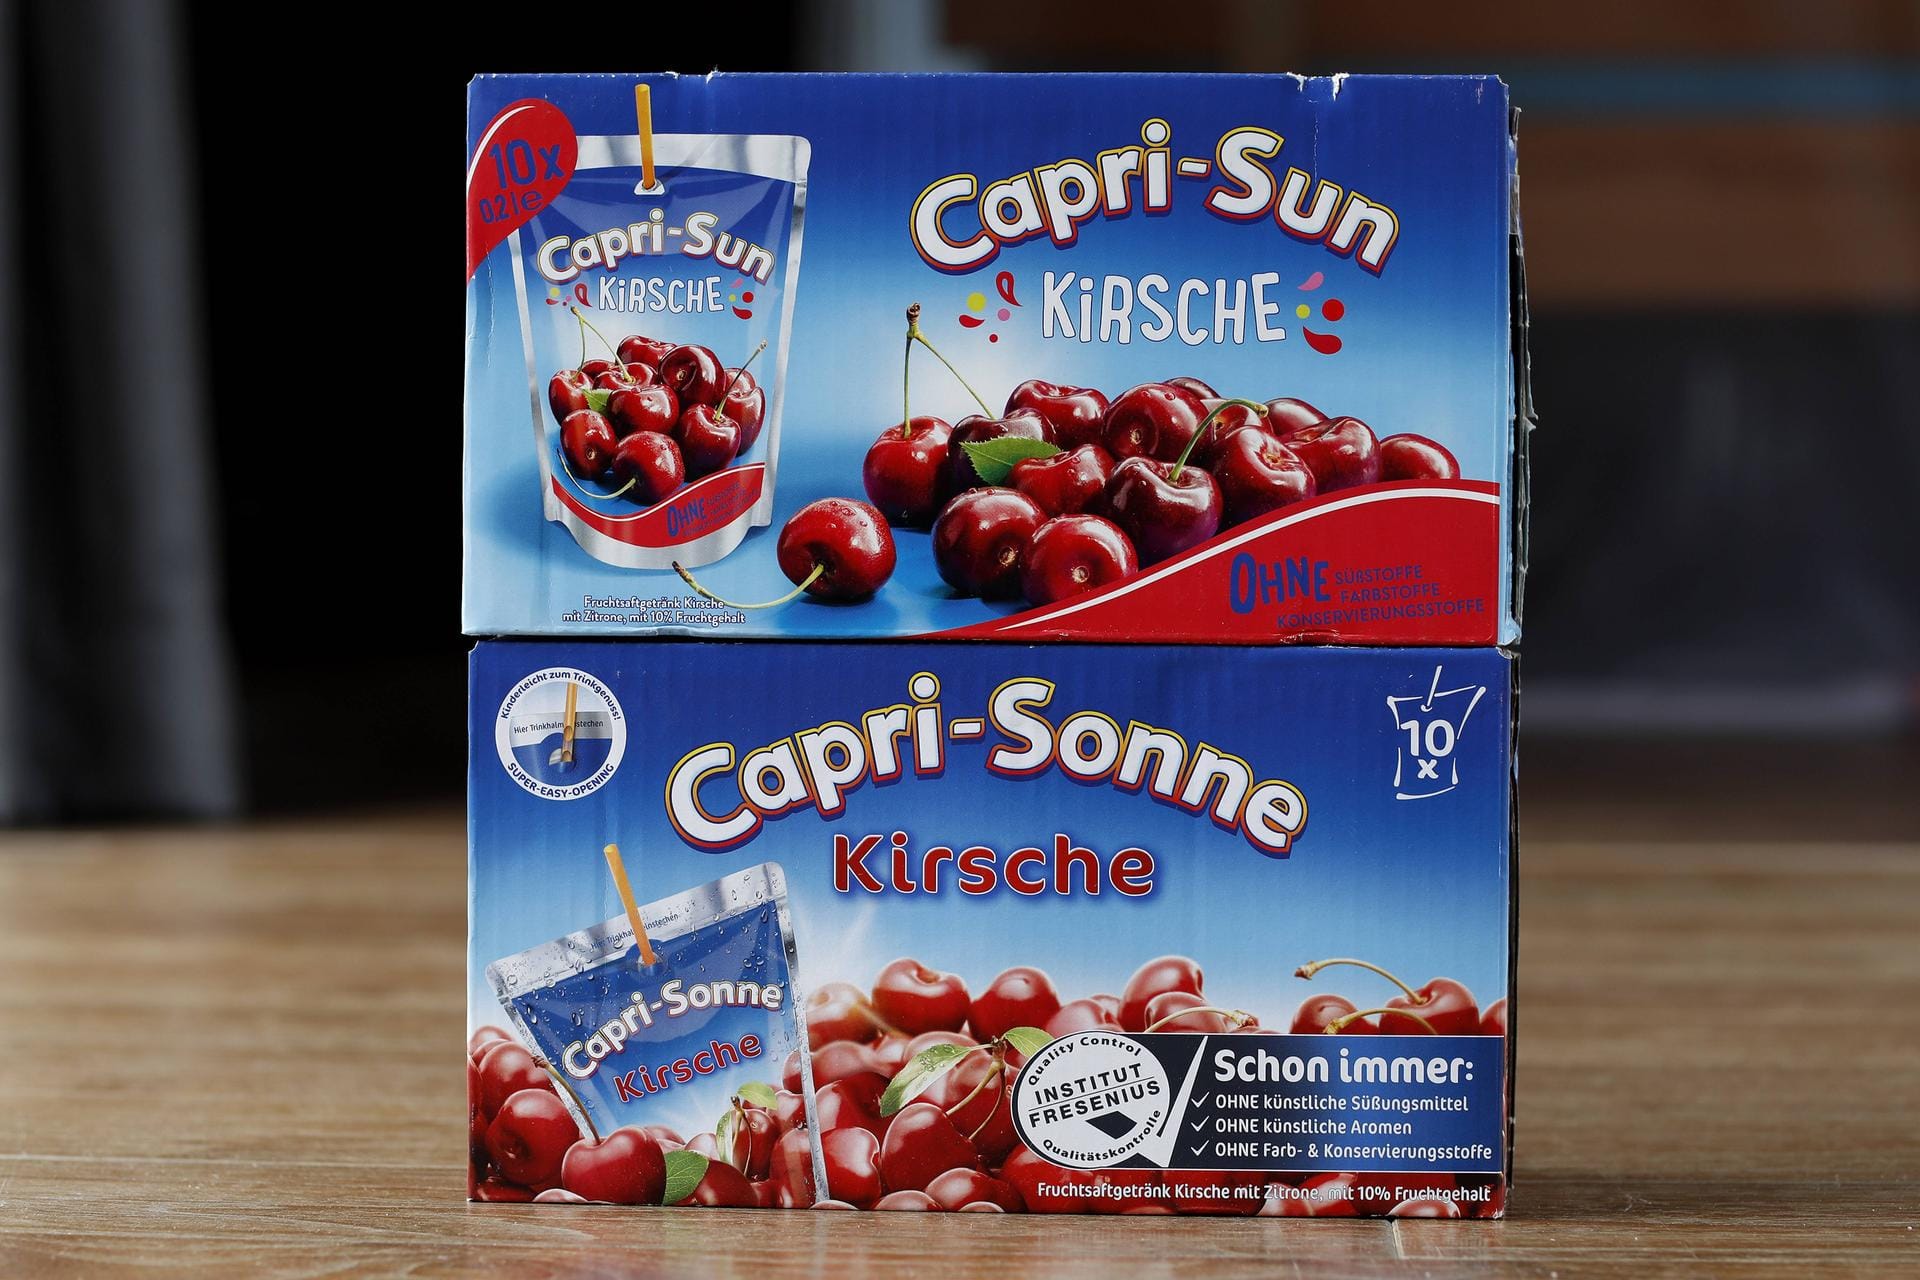 Capri-Sonne Kirsche: Das beliebte Getränk wurde 2017 von Capri-Sonne zu Capri-Sun umbenannt.